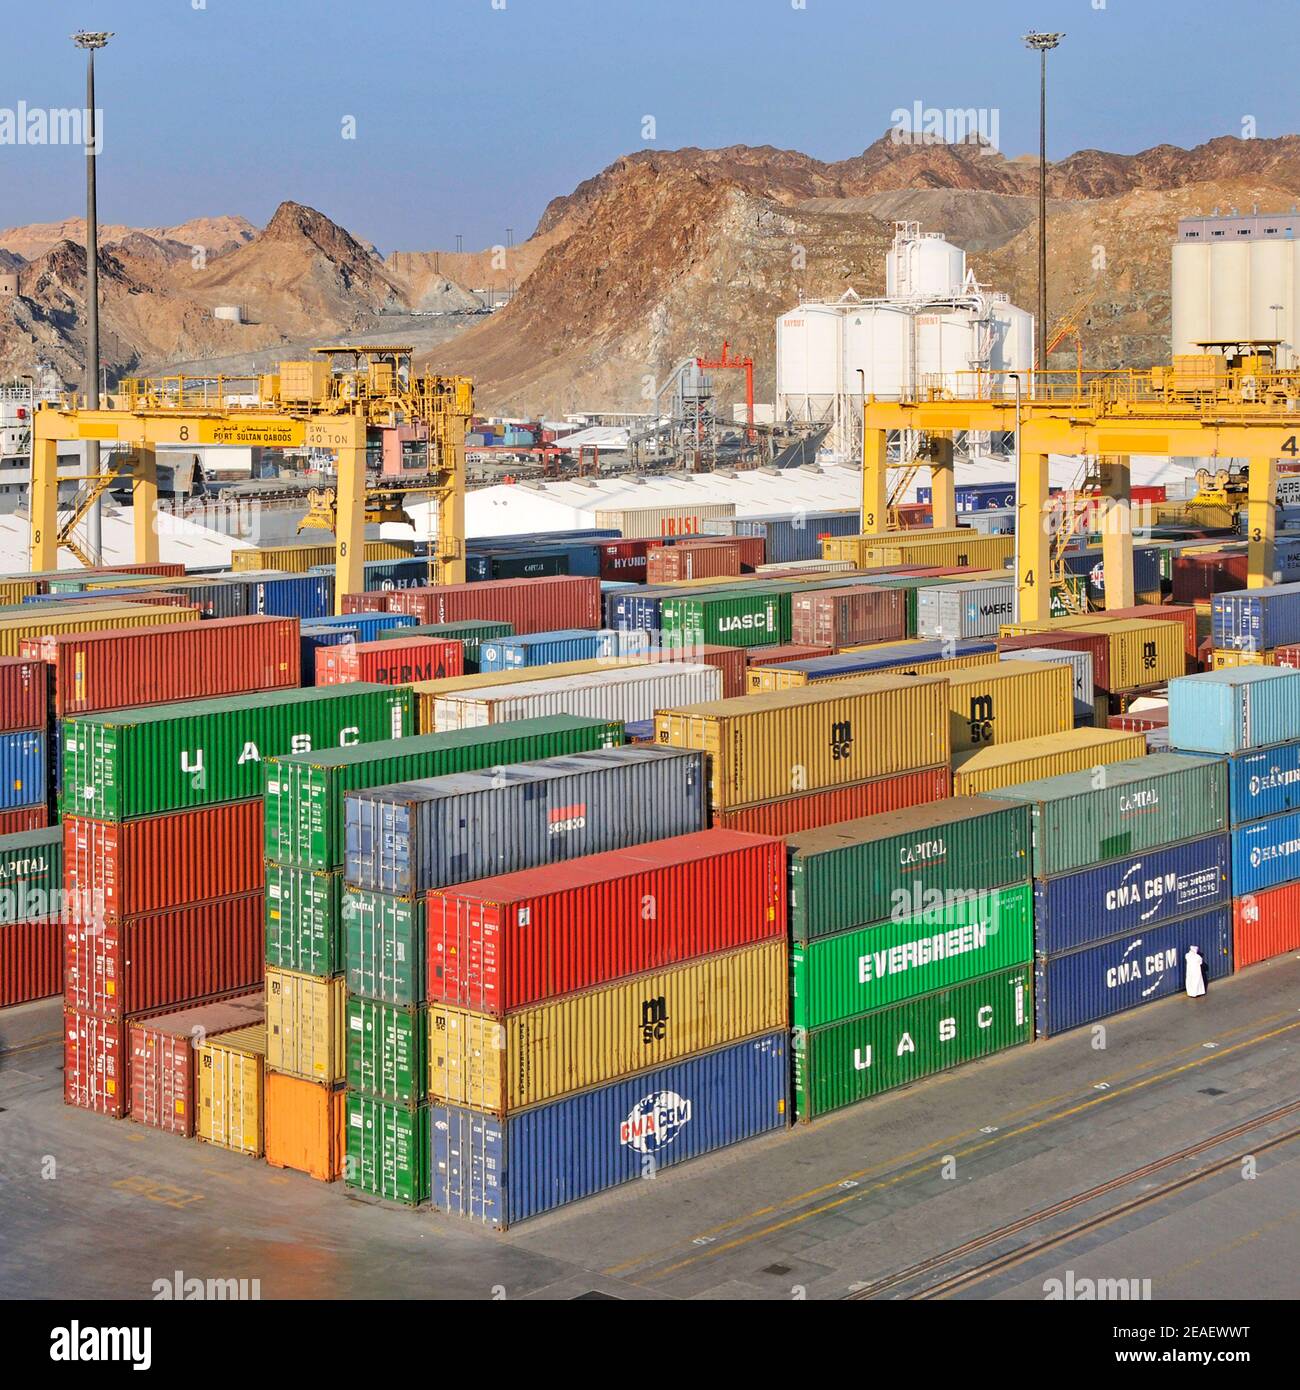 Luftaufnahme kommerziellen Dock & bunte Schiffahrtscontainer unter gelb Mobilkrane am Port Sultan Qaboos Muttrah Muscat Golf von Oman Naher Osten Stockfoto